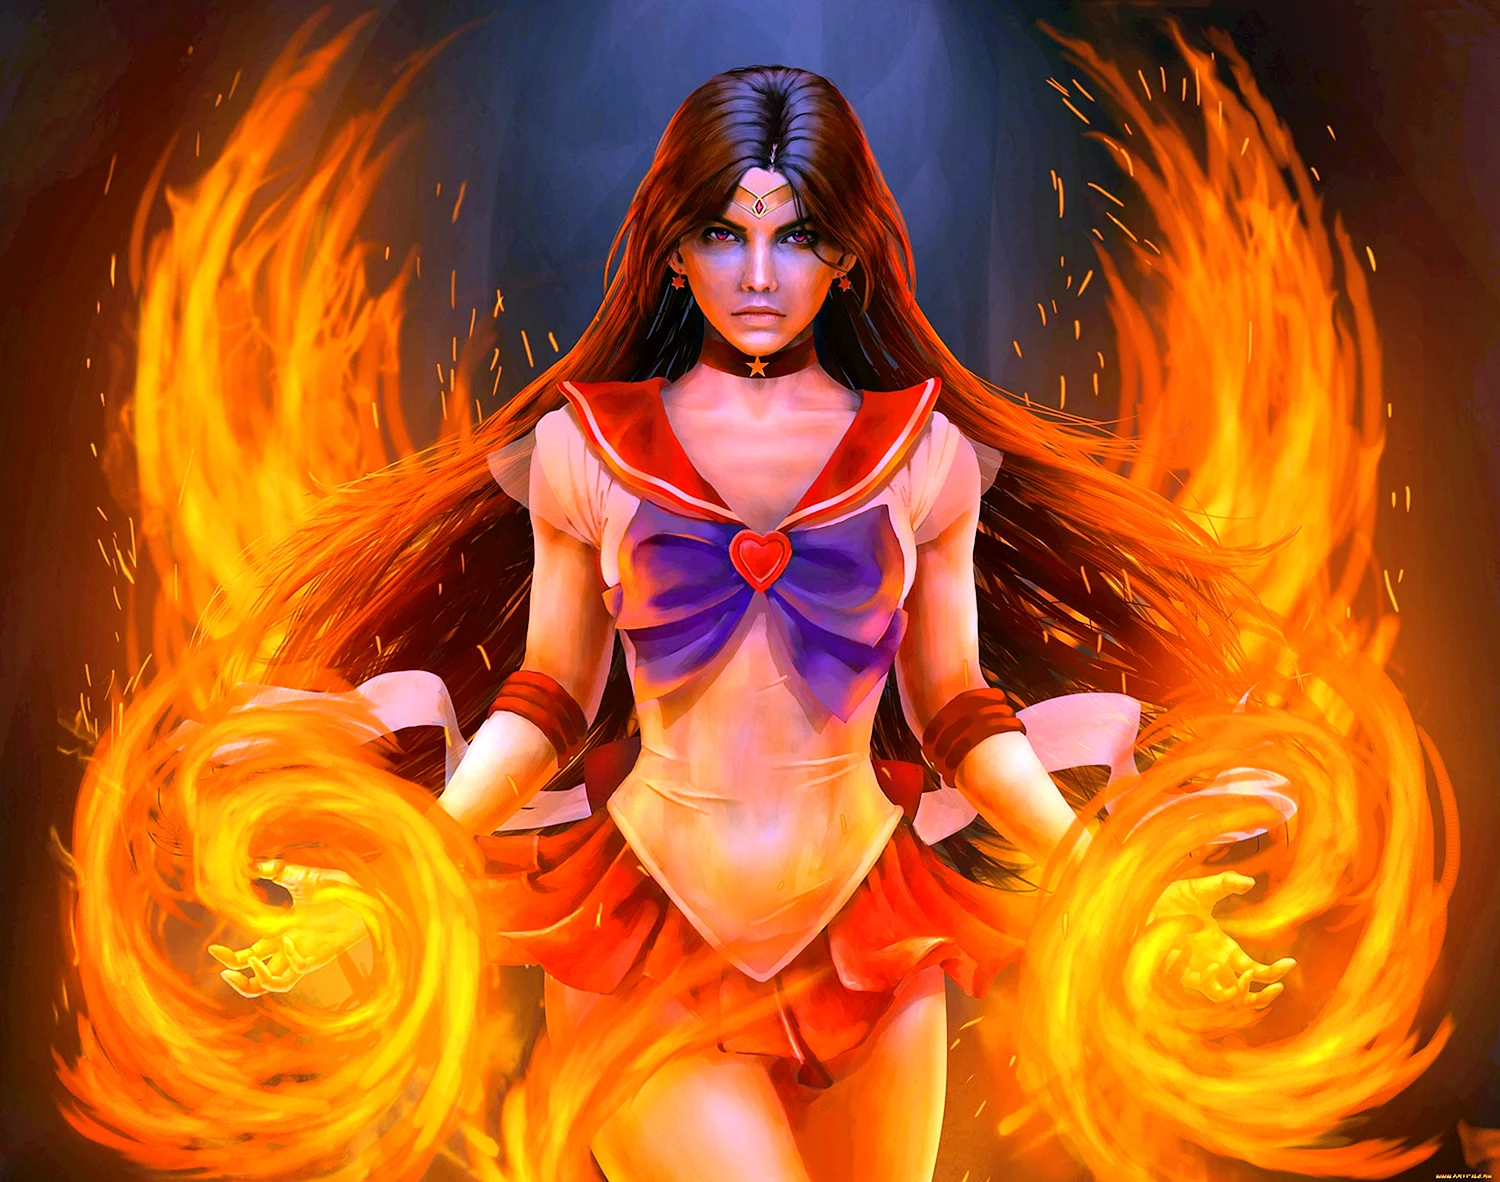 Гестия богиня огня